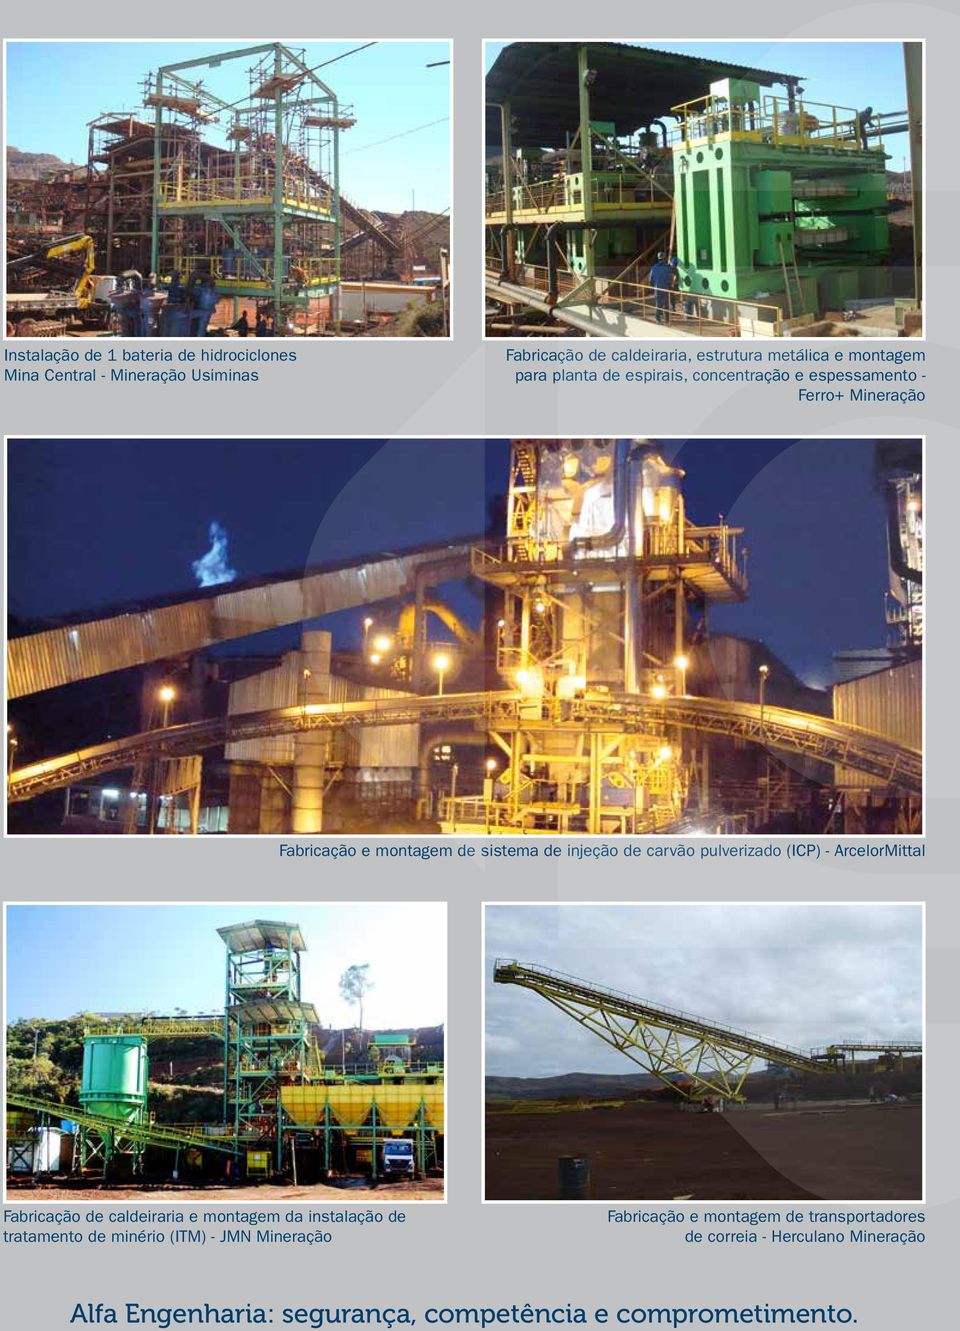 carvão pulverizado (ICP) - ArcelorMittal Fabricação de caldeiraria e montagem da instalação de tratamento de minério (ITM) - JMN